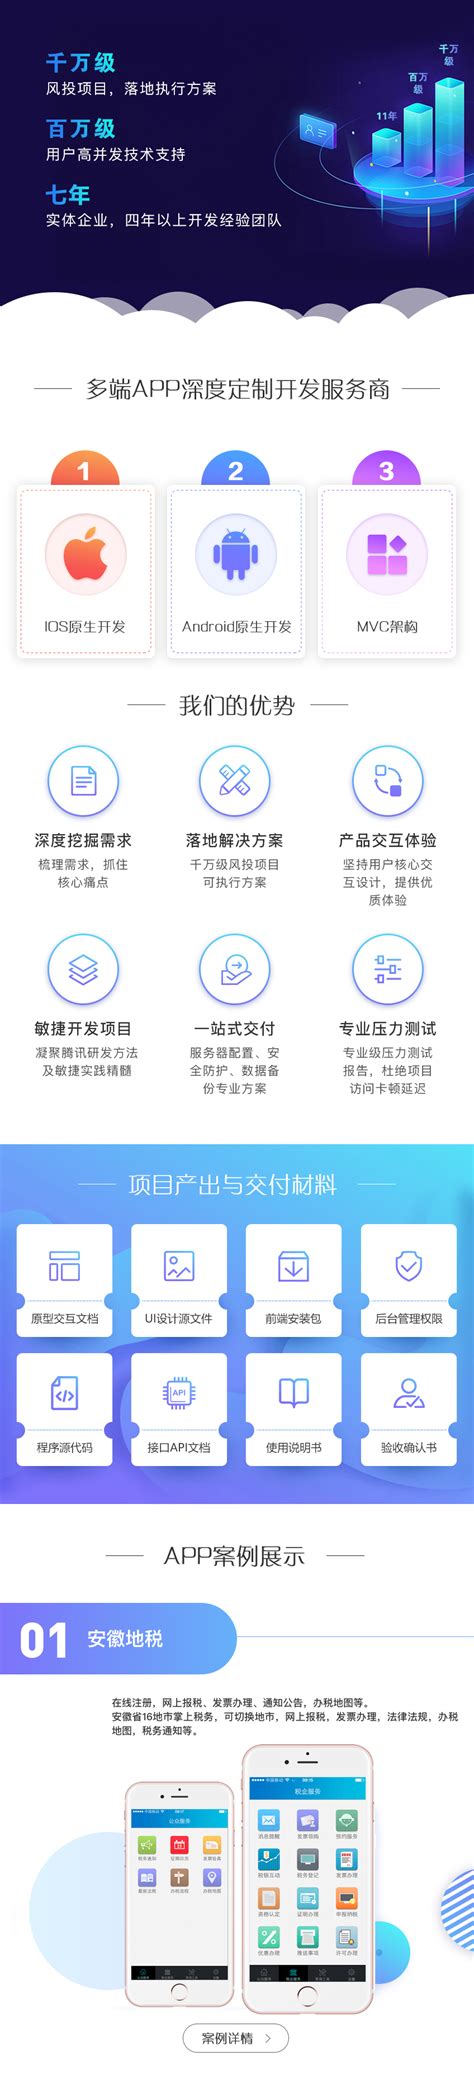 微恒网络提供靠谱的微商城小程序_揭阳推荐小程序商城-市场网shichang.com